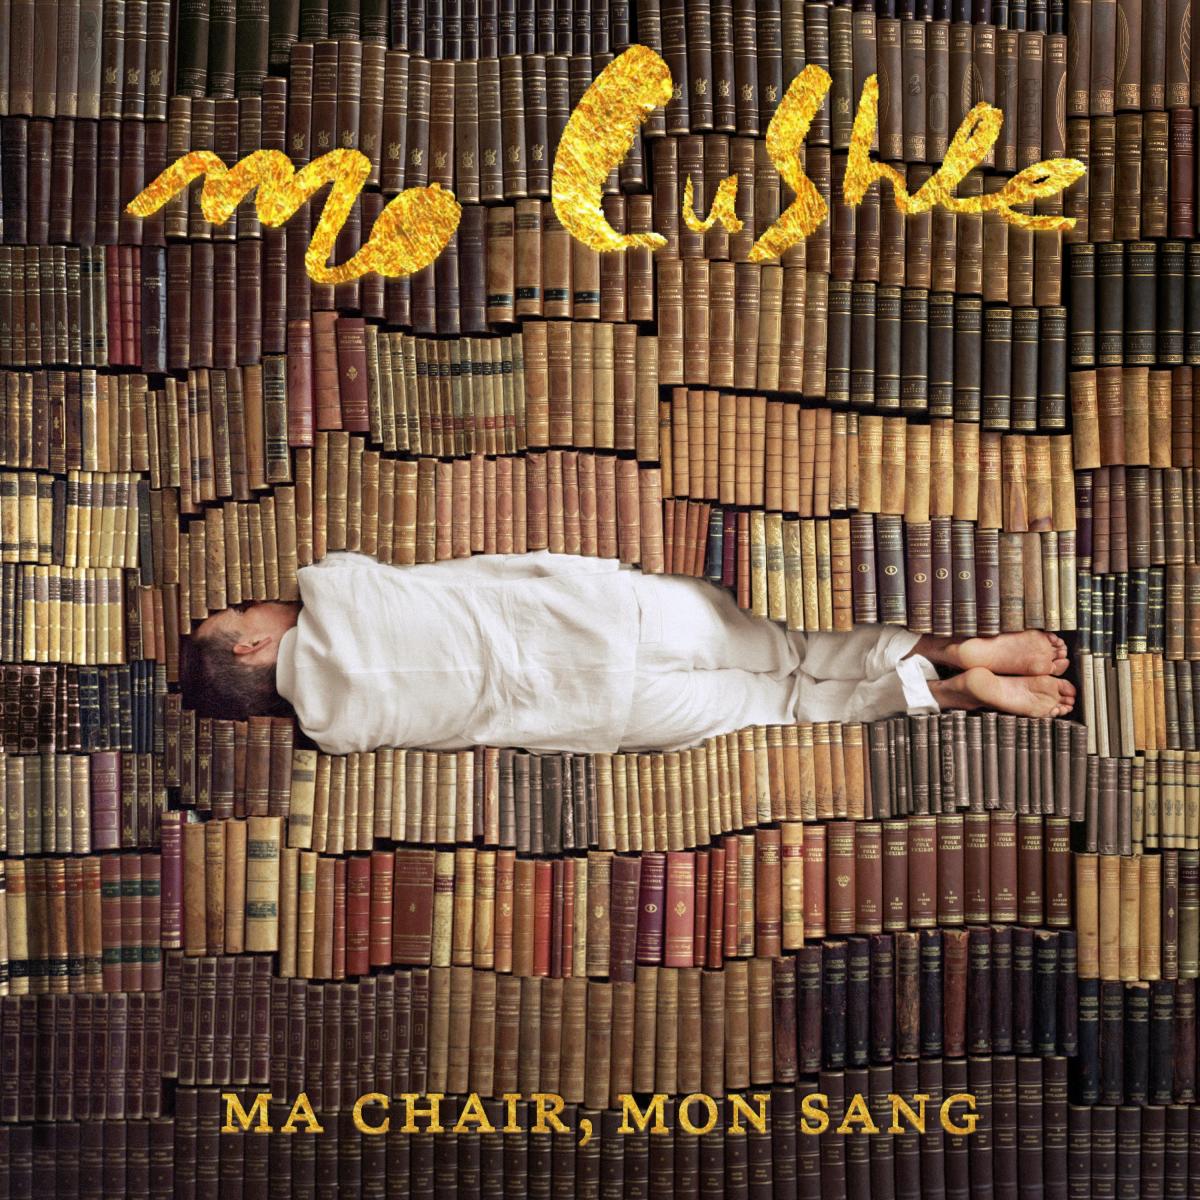 voici la cover de l'album "Ma Chair Mon Sang" de Mo Cushle